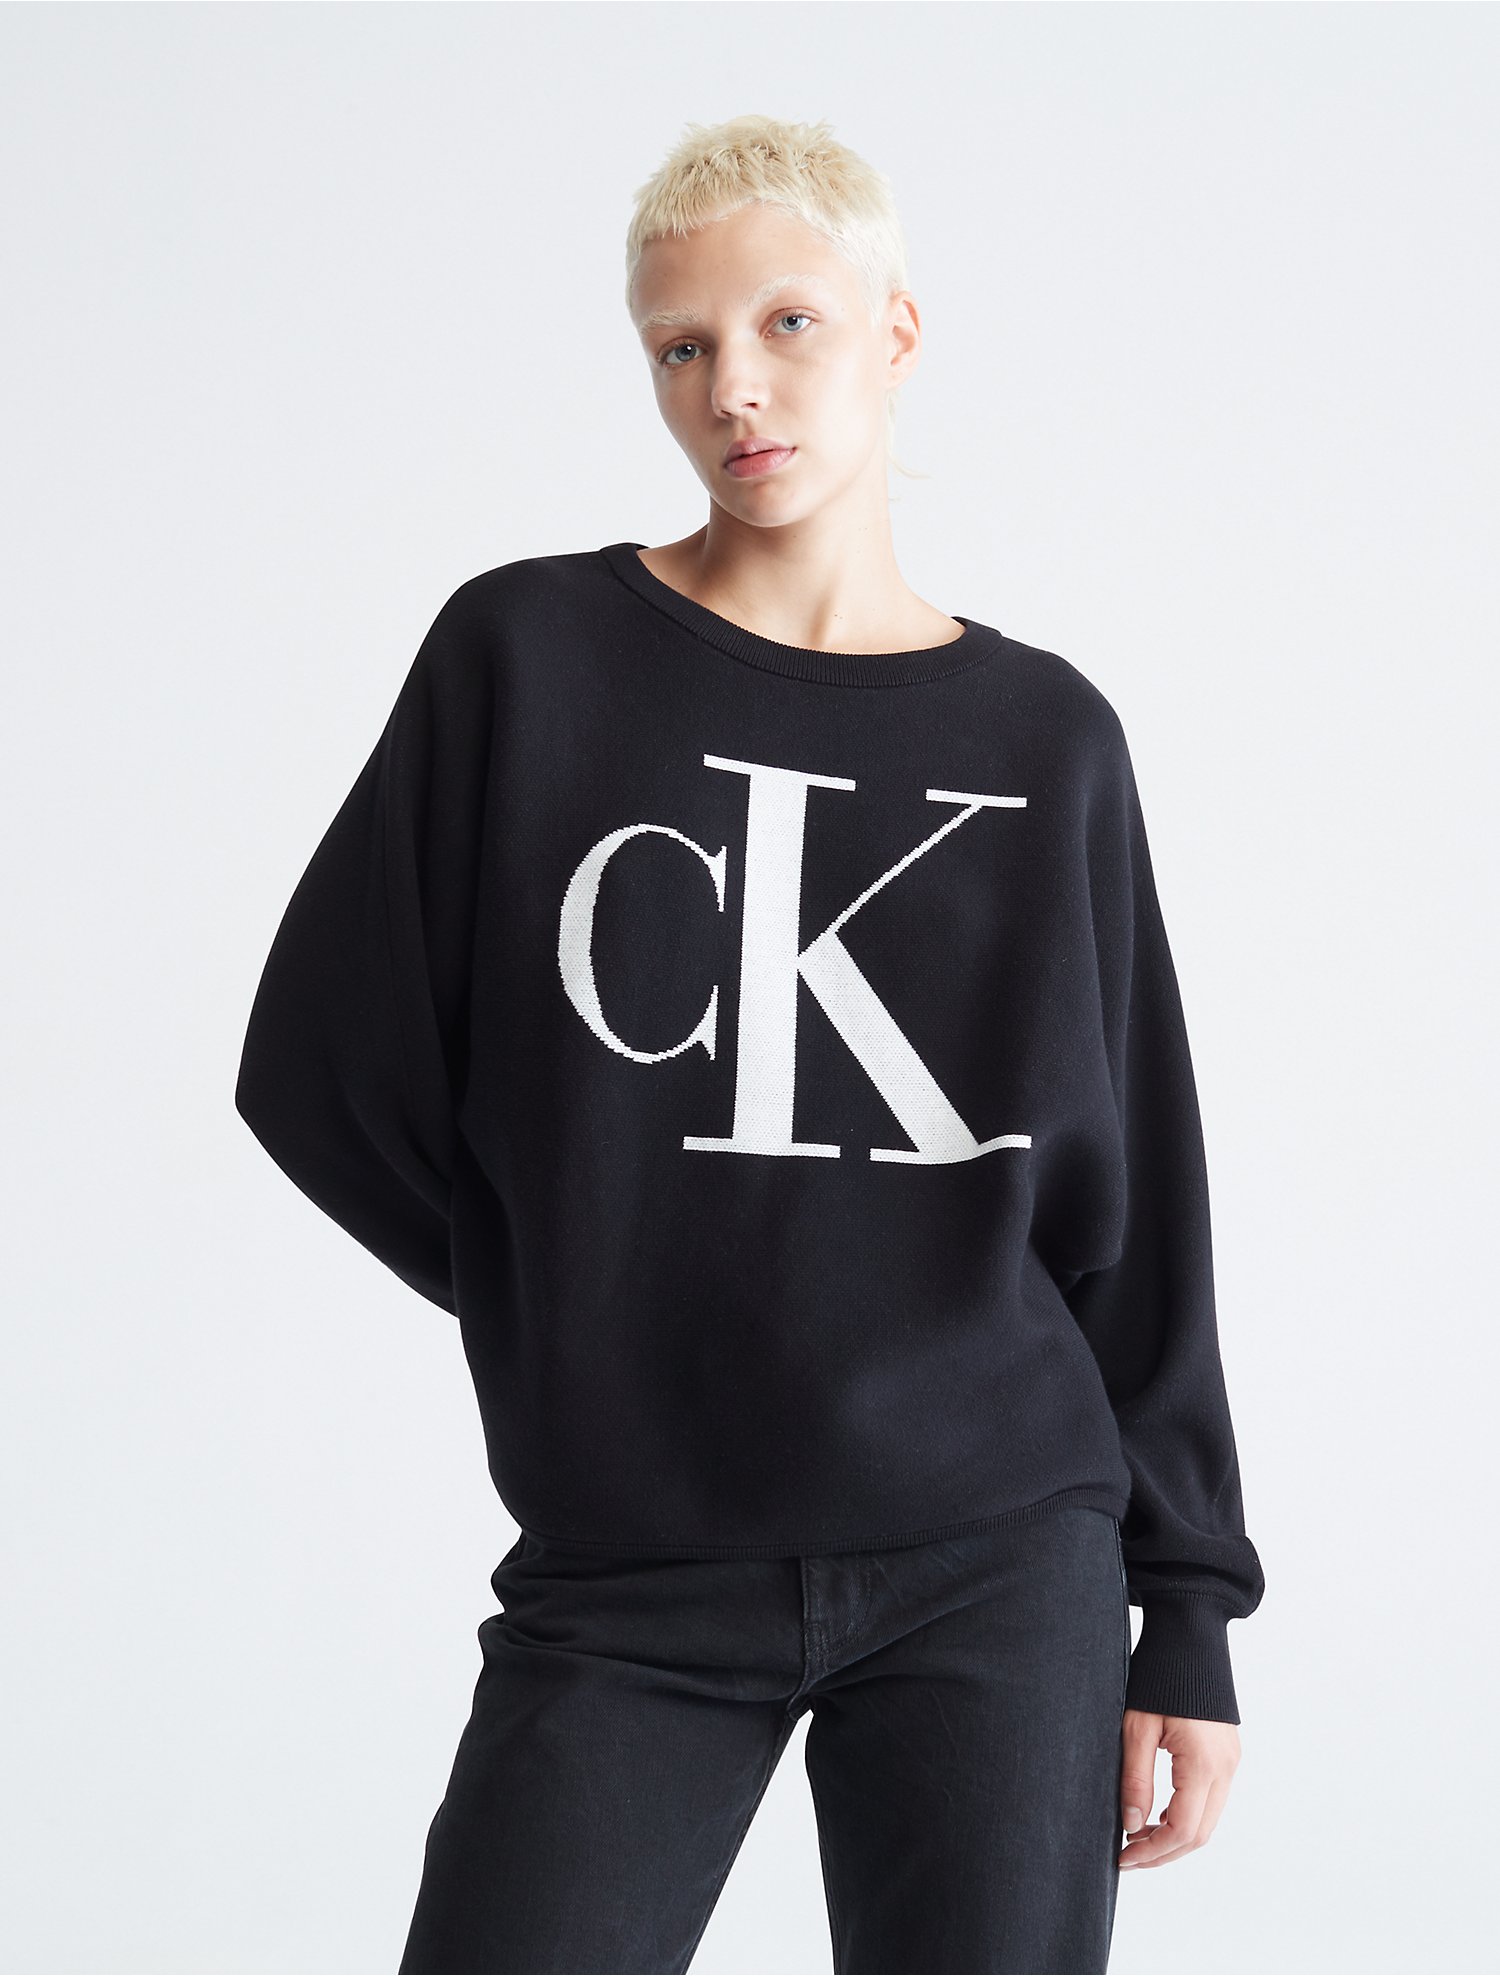 Introducir 79+ imagen calvin klein sweater women